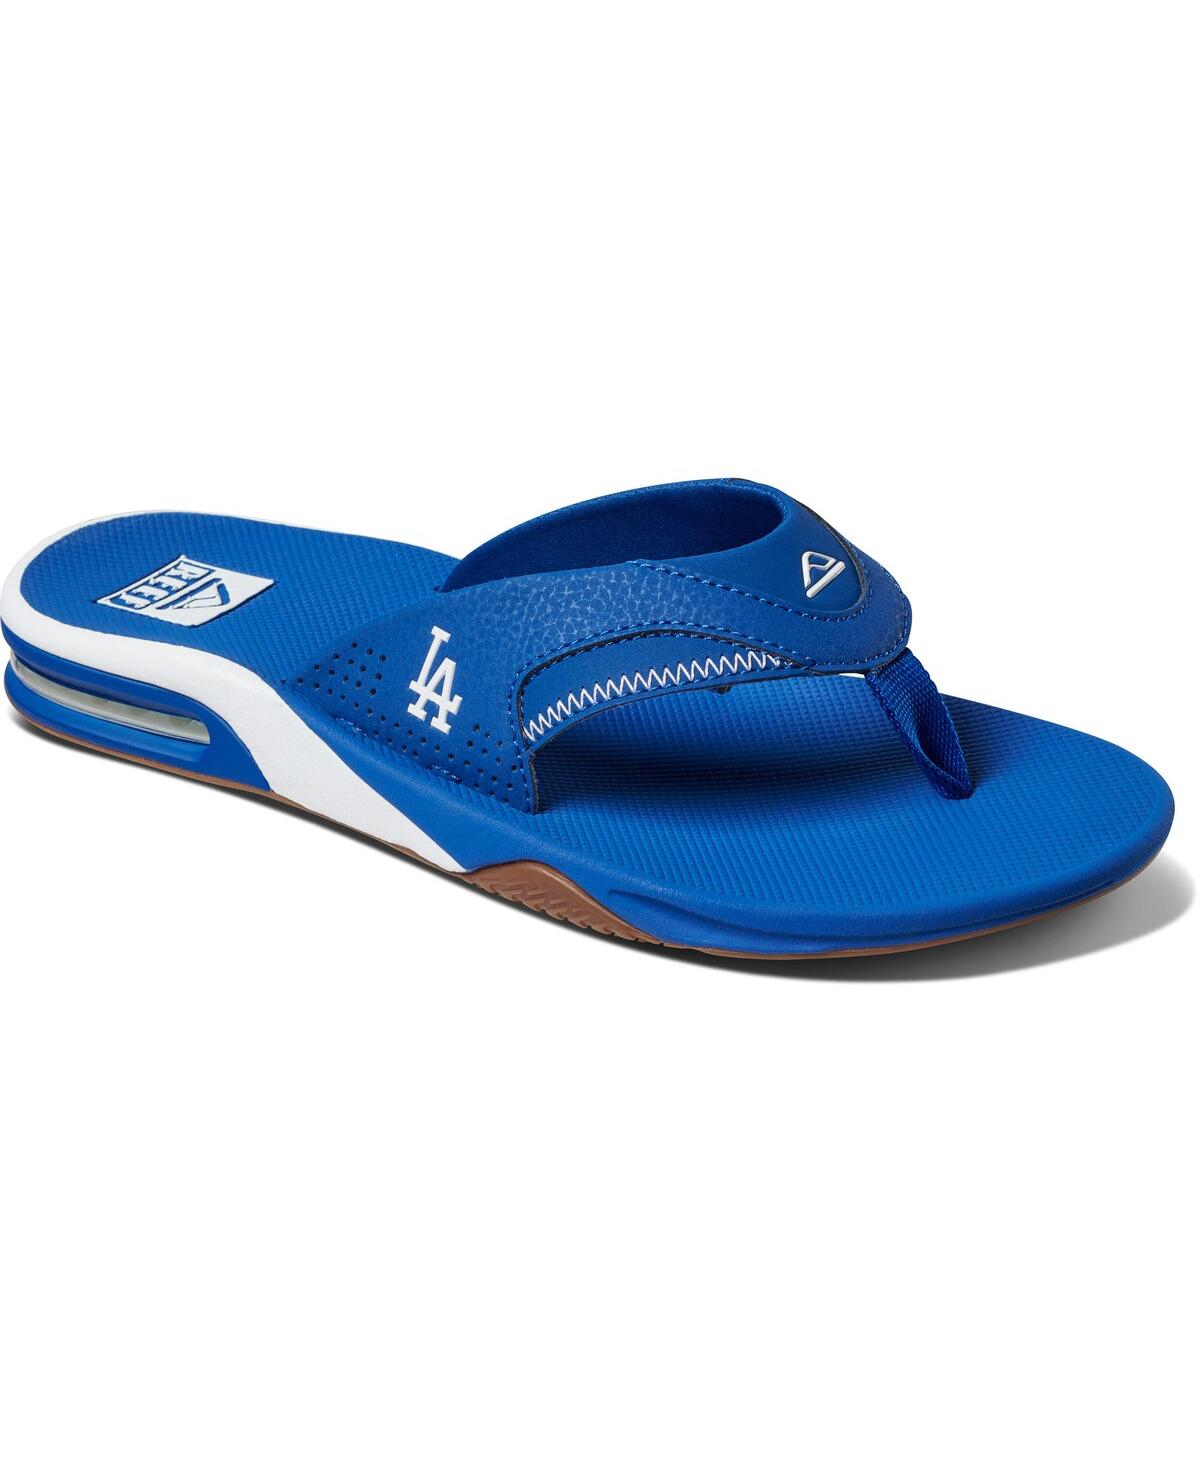 Men's Los Angeles Dodgers Fanning Bottle Opener Sandals - Royal